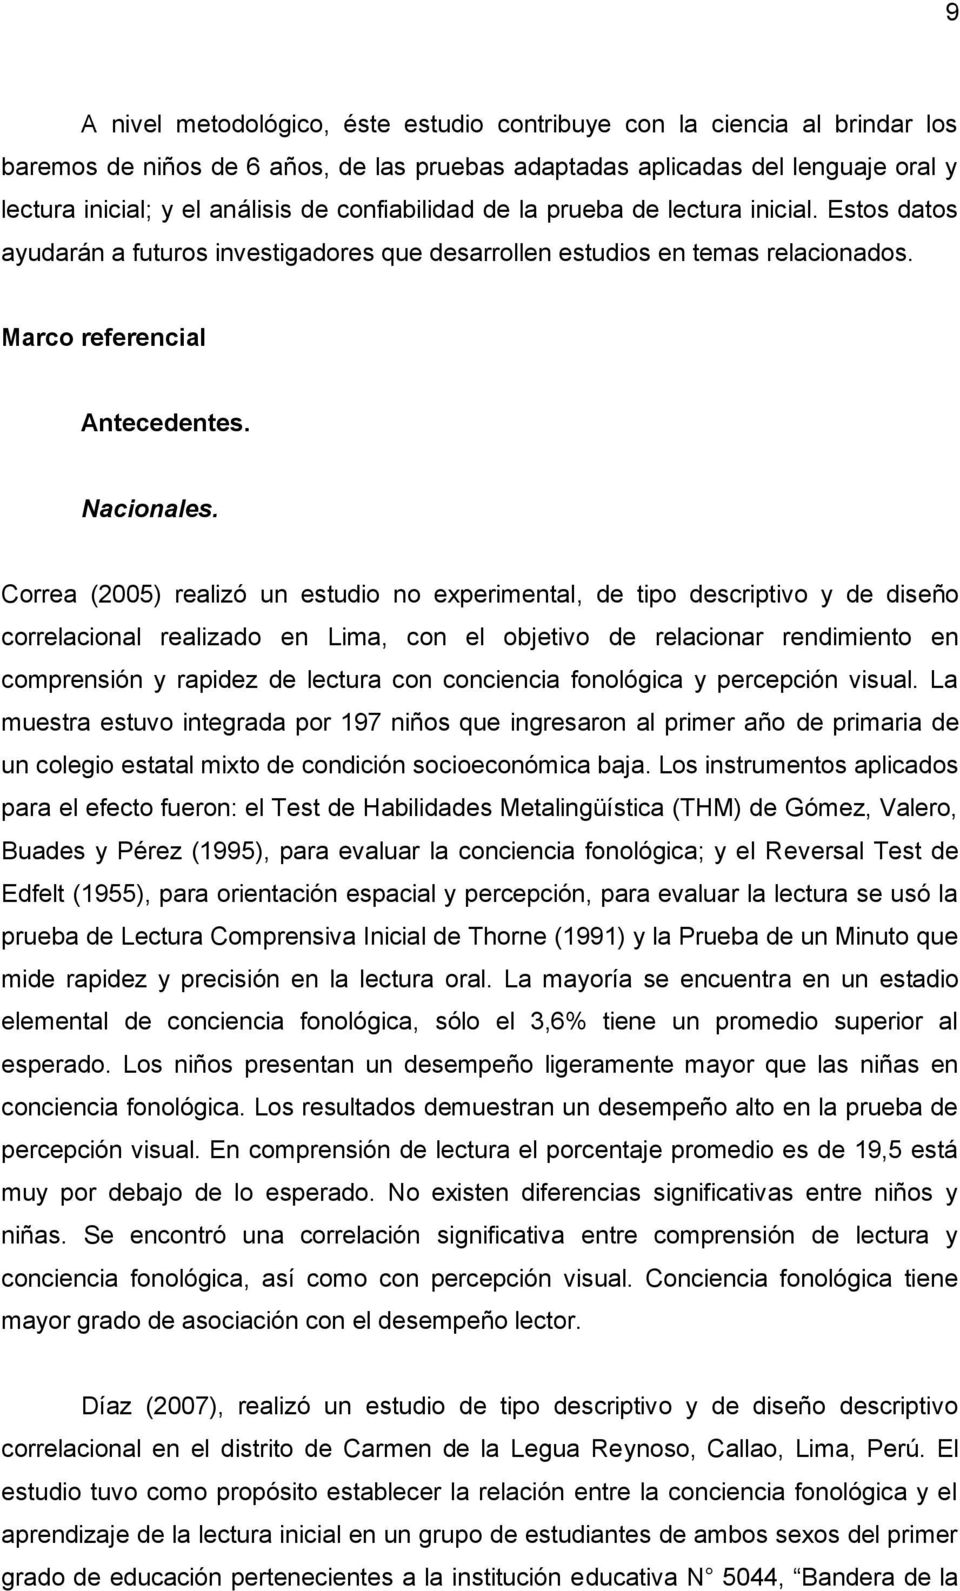 Correa (2005) realizó un estudio no experimental, de tipo descriptivo y de diseño correlacional realizado en Lima, con el objetivo de relacionar rendimiento en comprensión y rapidez de lectura con